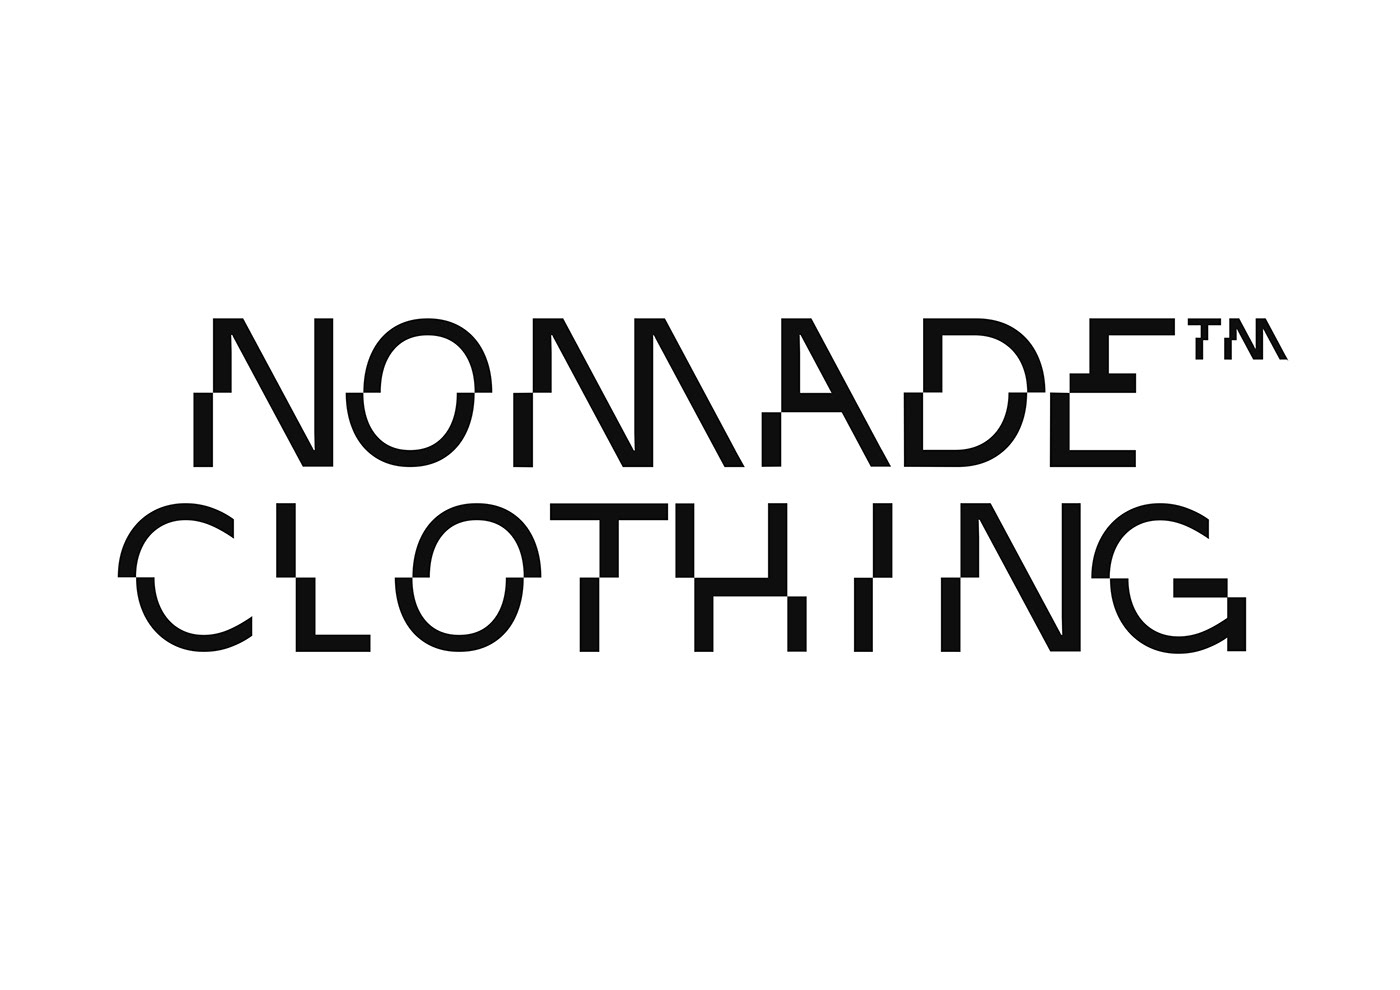 NOMADE CLOTHING nomade Clothing print Fashion  edit NoMadeclothing